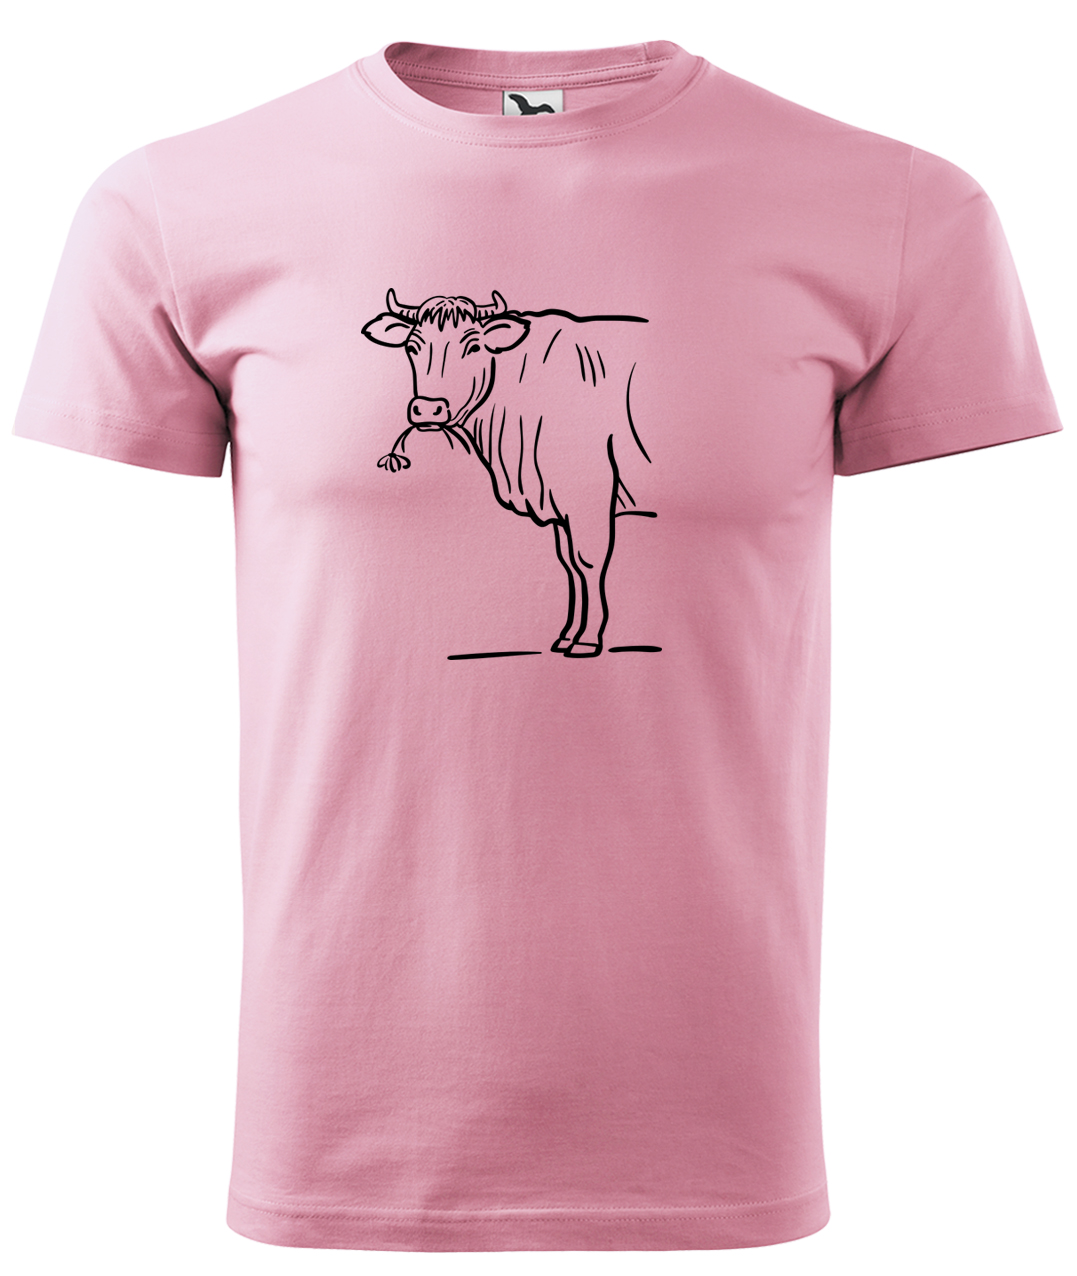 Dětské tričko s krávou - Býk Velikost: 4 roky / 110 cm, Barva: Růžová (30), Délka rukávu: Krátký rukáv